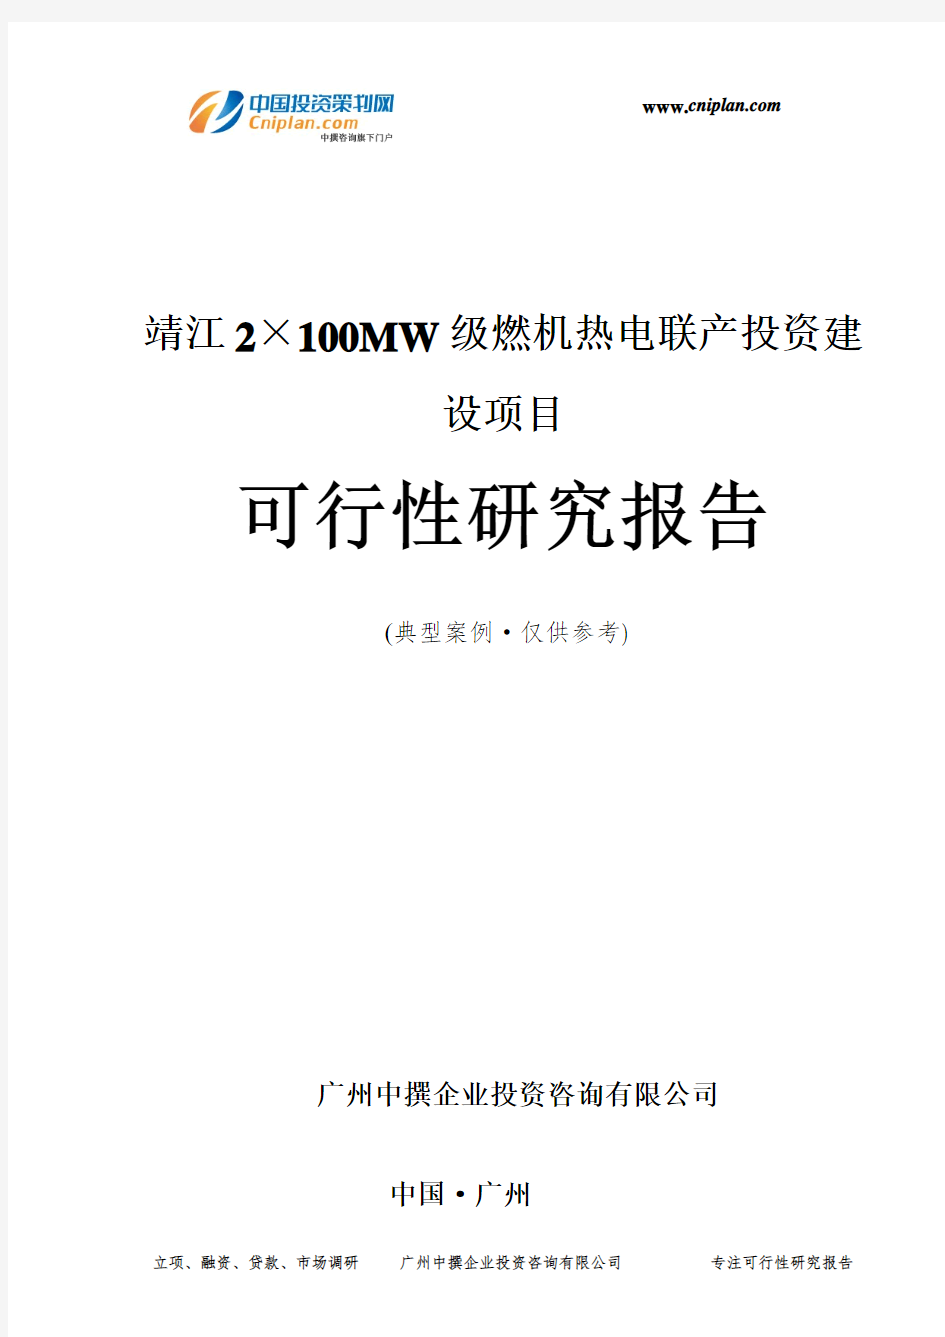 靖江2×100MW级燃机热电联产投资建设项目可行性研究报告-广州中撰咨询